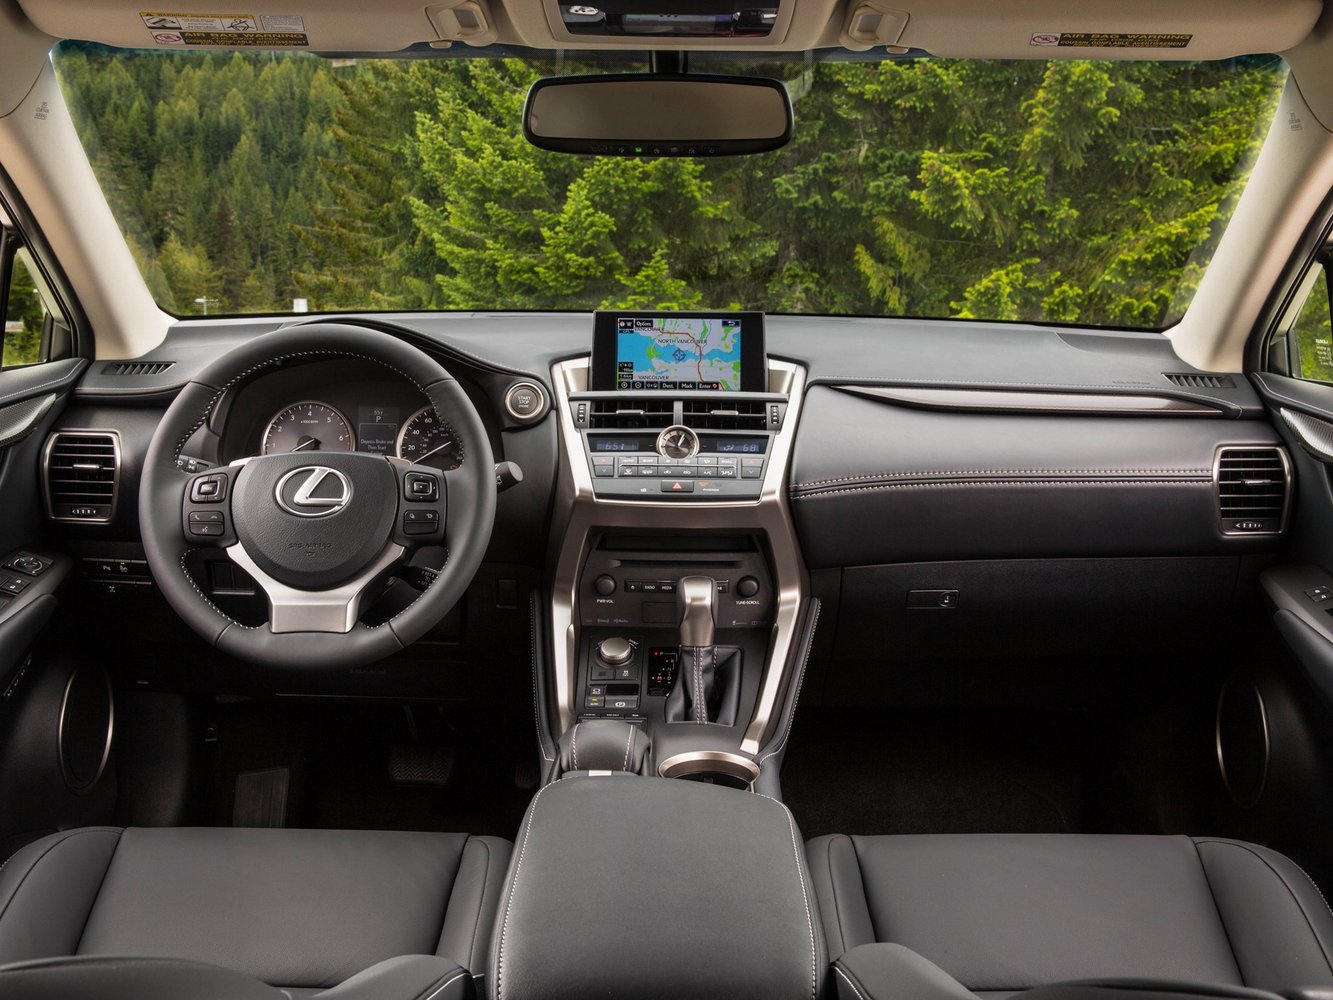 кроссовер Lexus NX 2014 - 2016г выпуска модификация Luxury 2.5 CVT (155 л.с.) 4×4